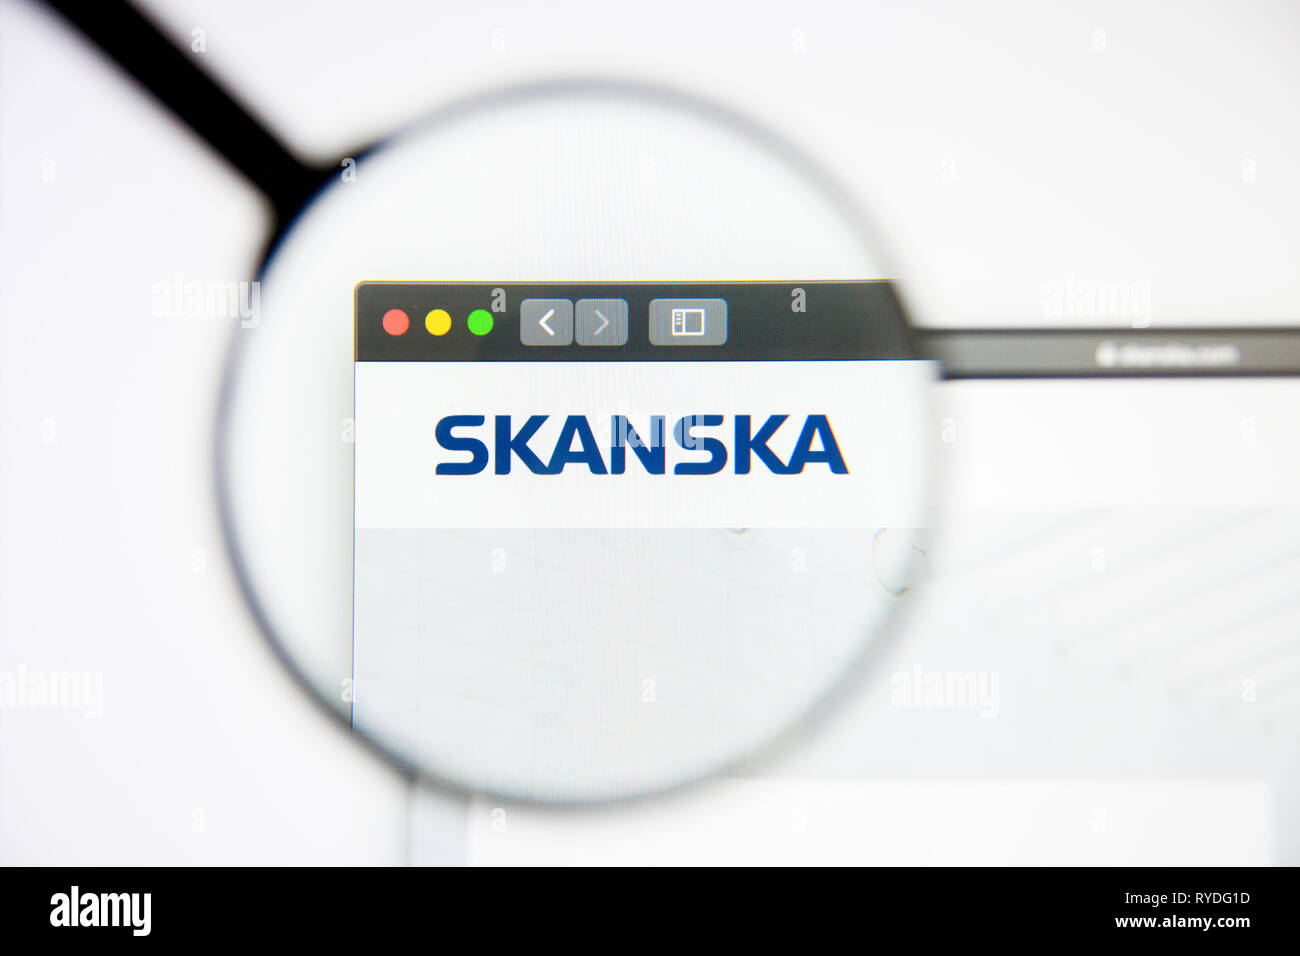 Los Angeles, Californie, USA - 5 mars 2019 : Skanska accueil du site. Logo Skanska visible sur l'écran d'affichage, de rédaction d'illustration Banque D'Images